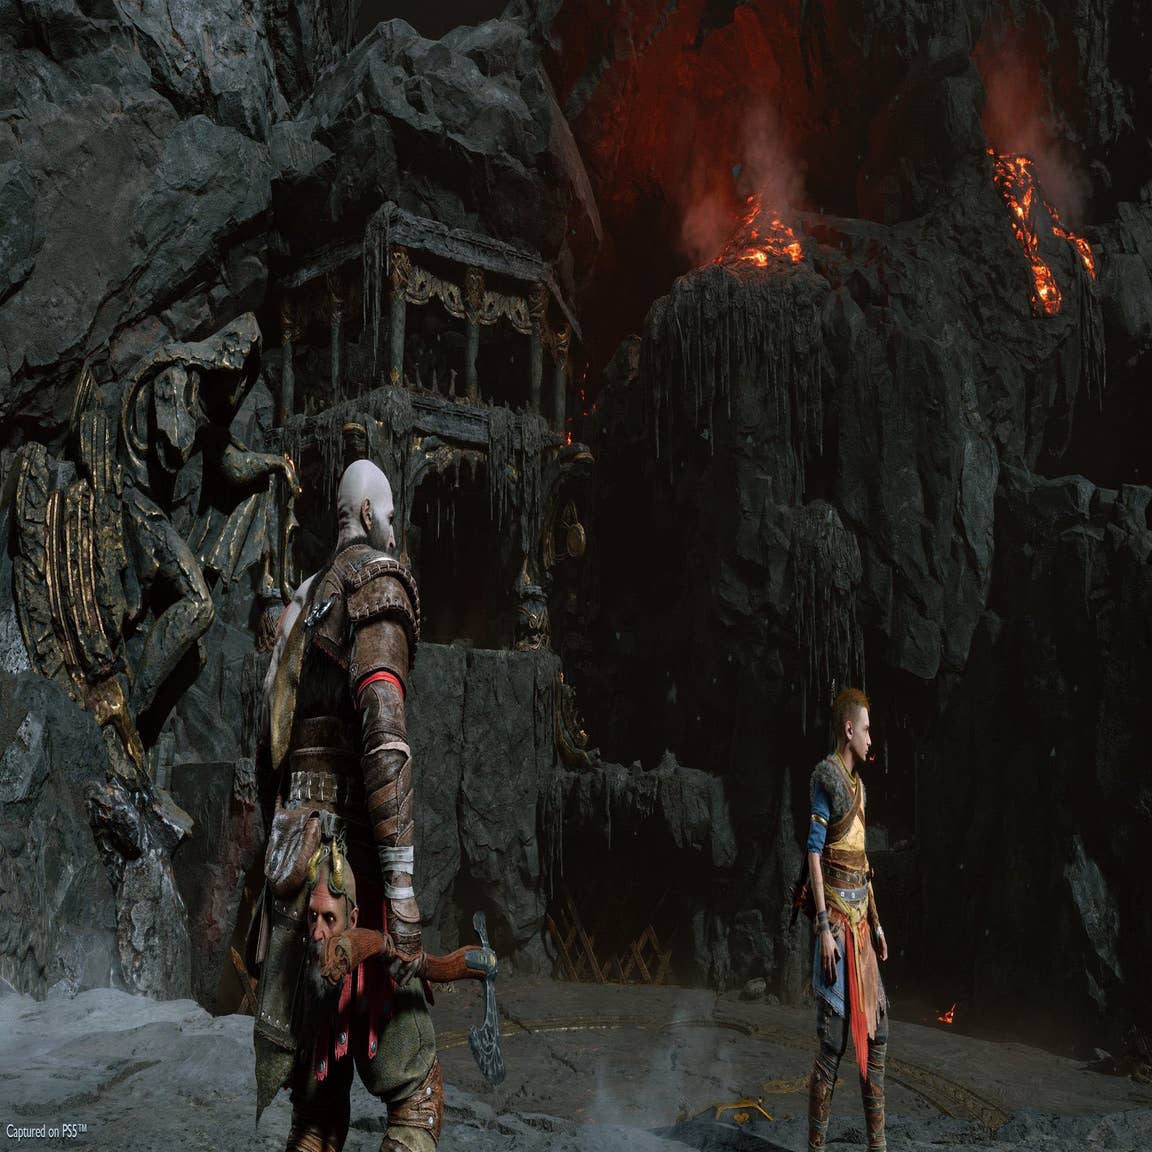 Jogo God of War Ragnarök, PS4